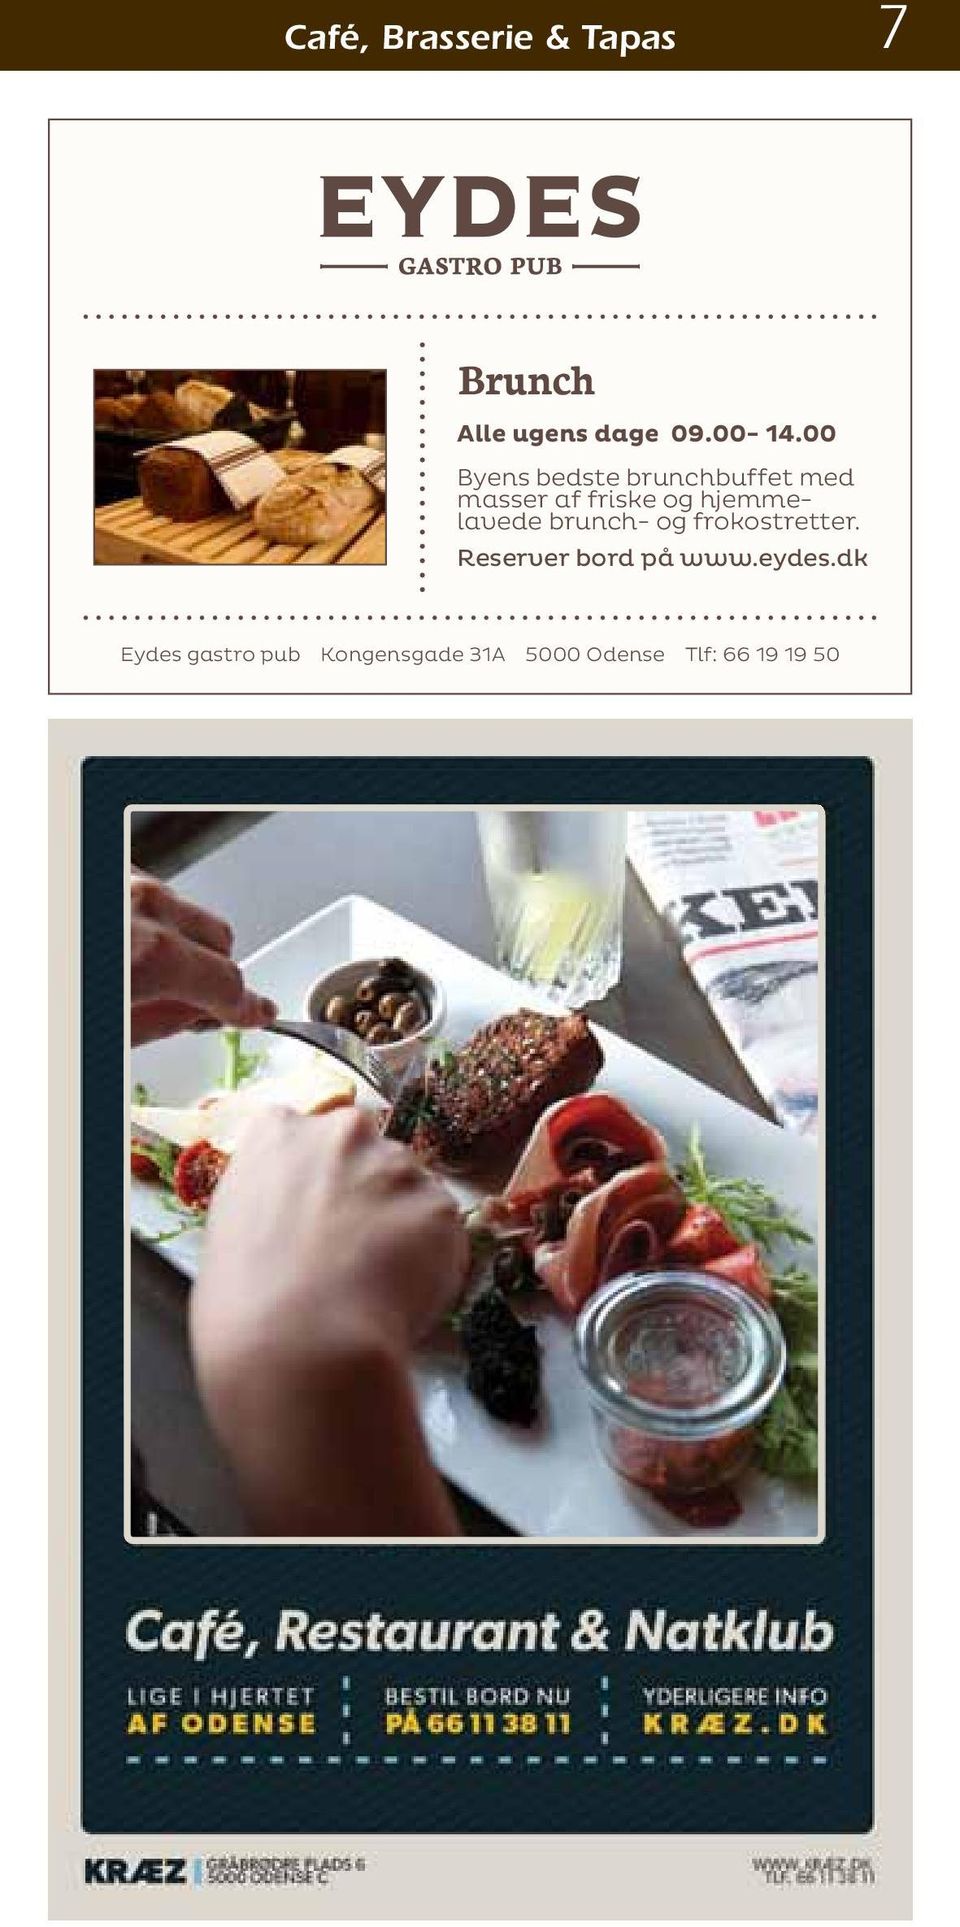 hjemmelavede brunch- og frokostretter. Reserver bord på www.